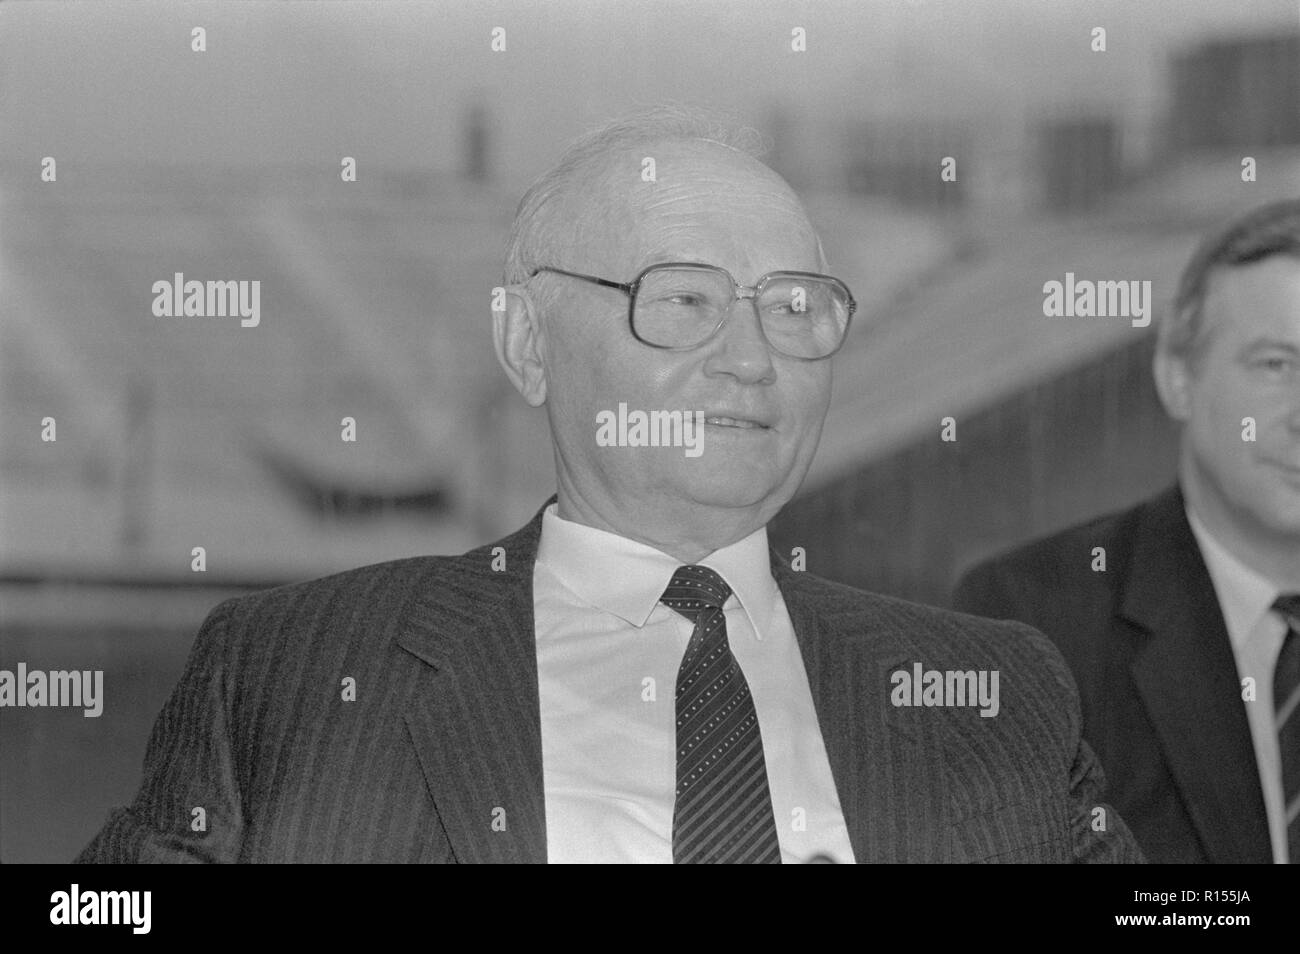 Moskau, UDSSR - Dezember 26, 1990: Vorsitzender des Ausschusses für Staatssicherheit (KGB) Wladimir Alexandrowitsch Kryuchkov Presse-Konferenz am 4. Kongress der Volksdeputierten der UDSSR Stockfoto